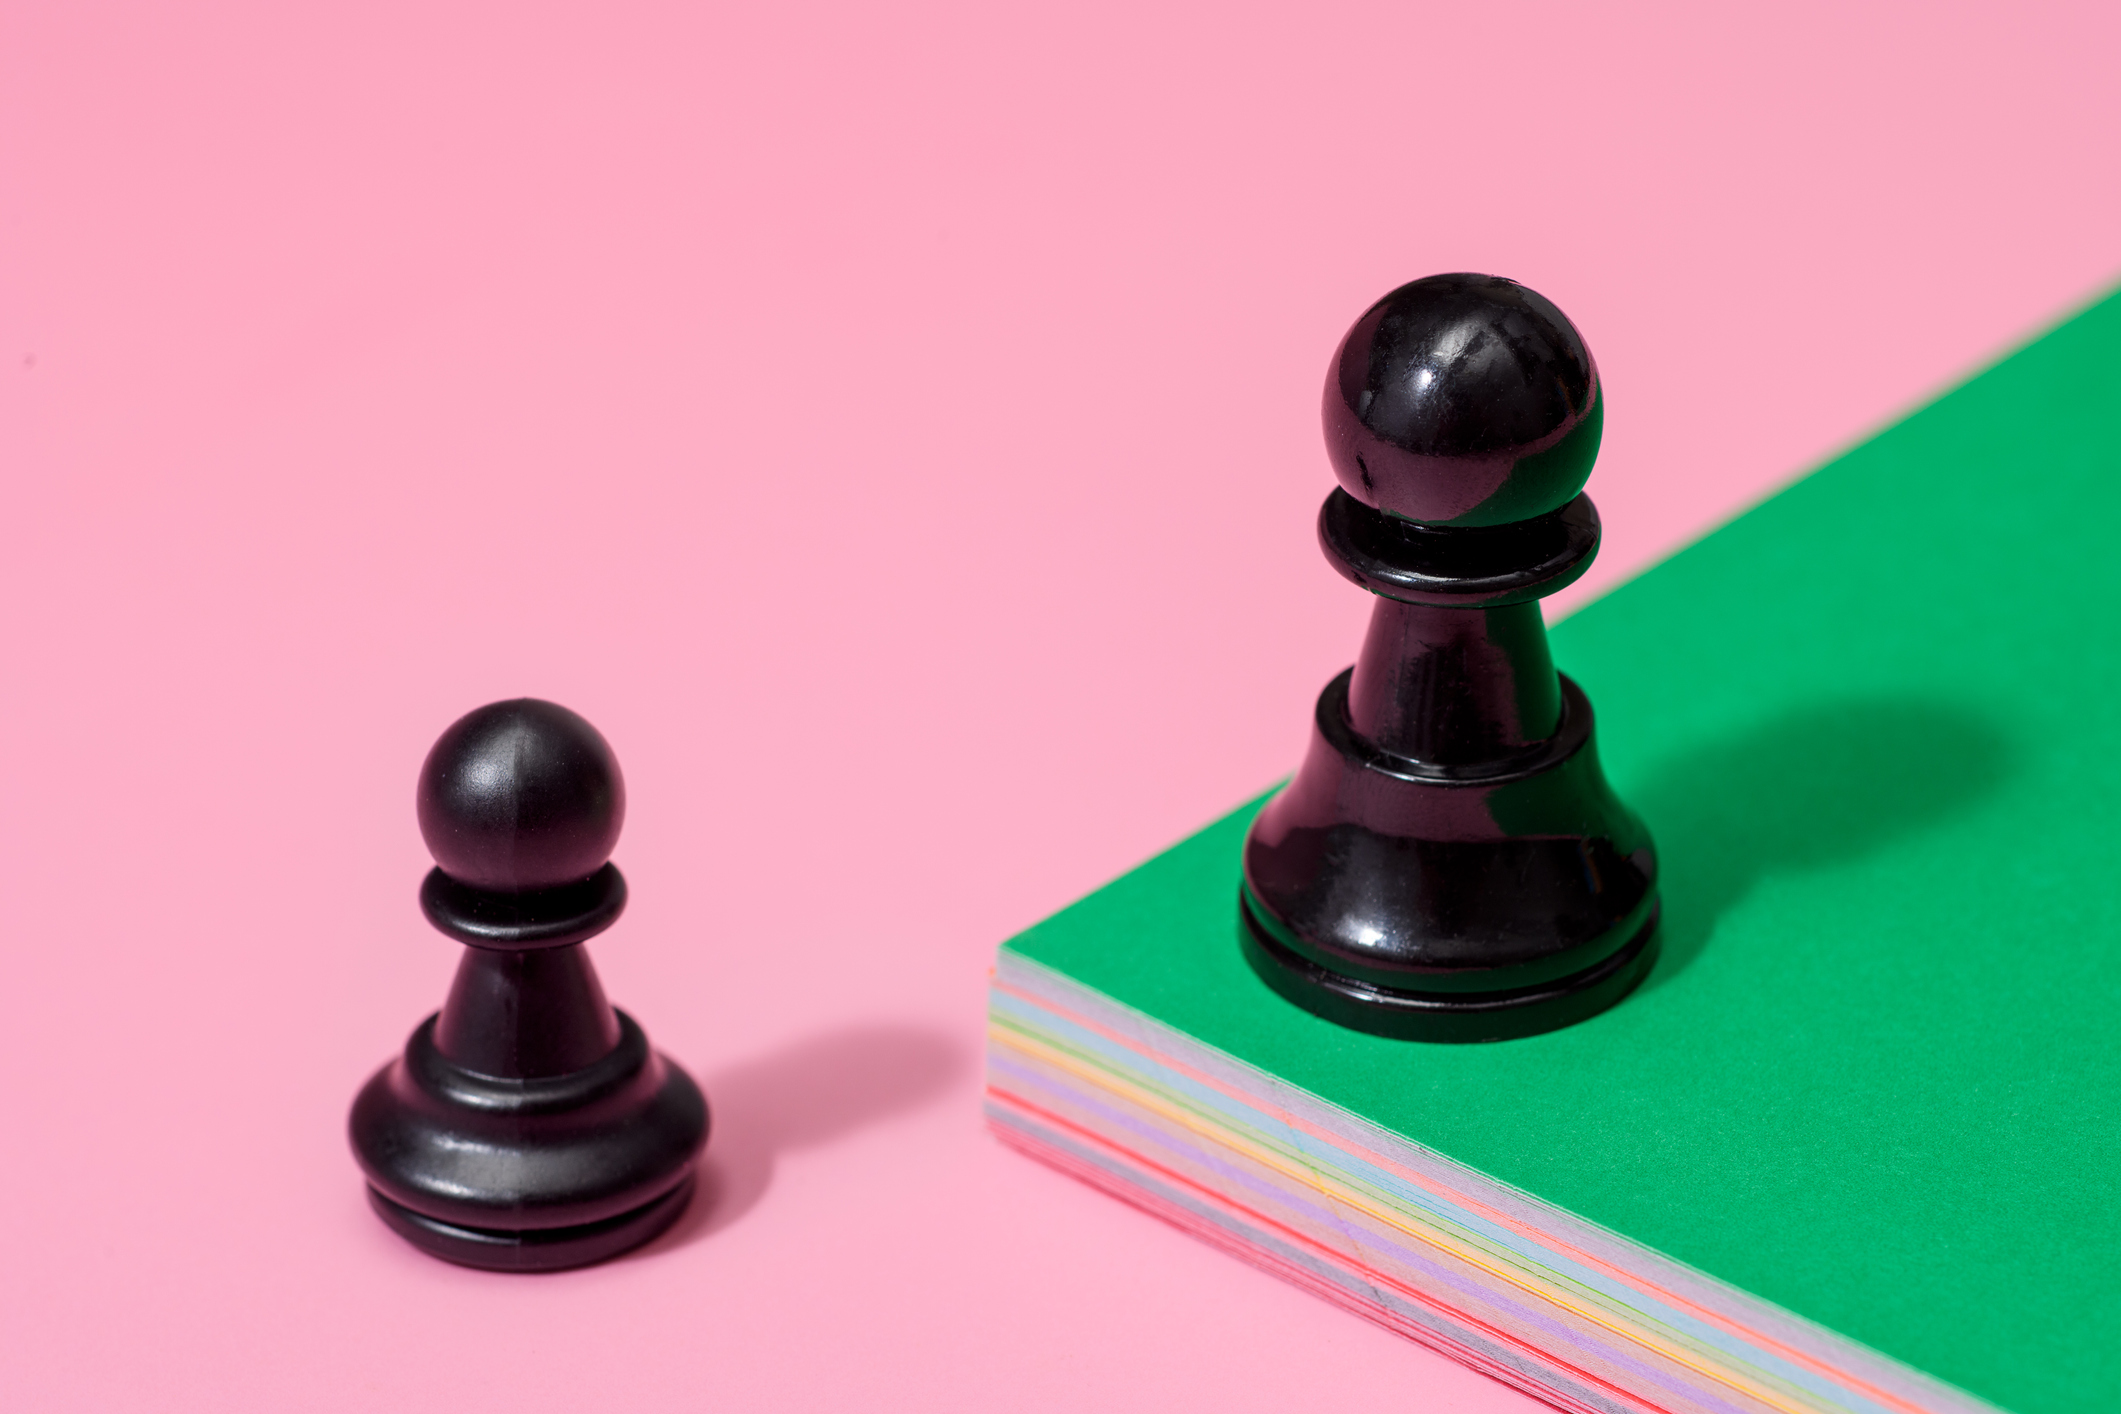 одна шахматная пешка на зеленой приподнятой платформе и одна на нижней розовой платформе.  стартапы и рыночные спады